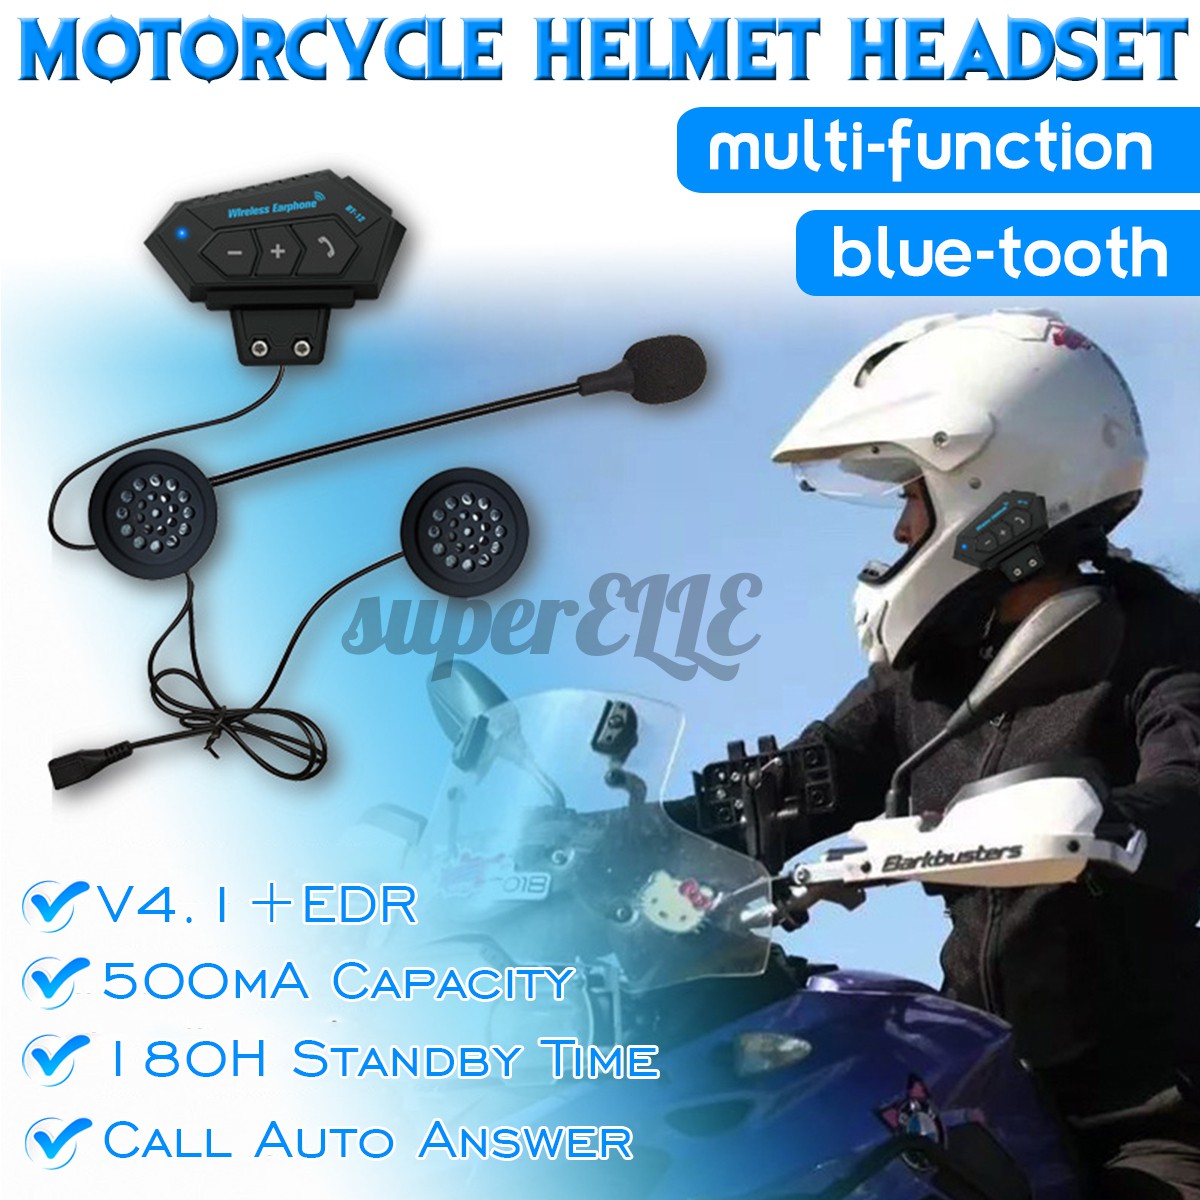 Motorbike Helmet Headset bluetooth Interphone Motorcycle Headphone Hands-Free 